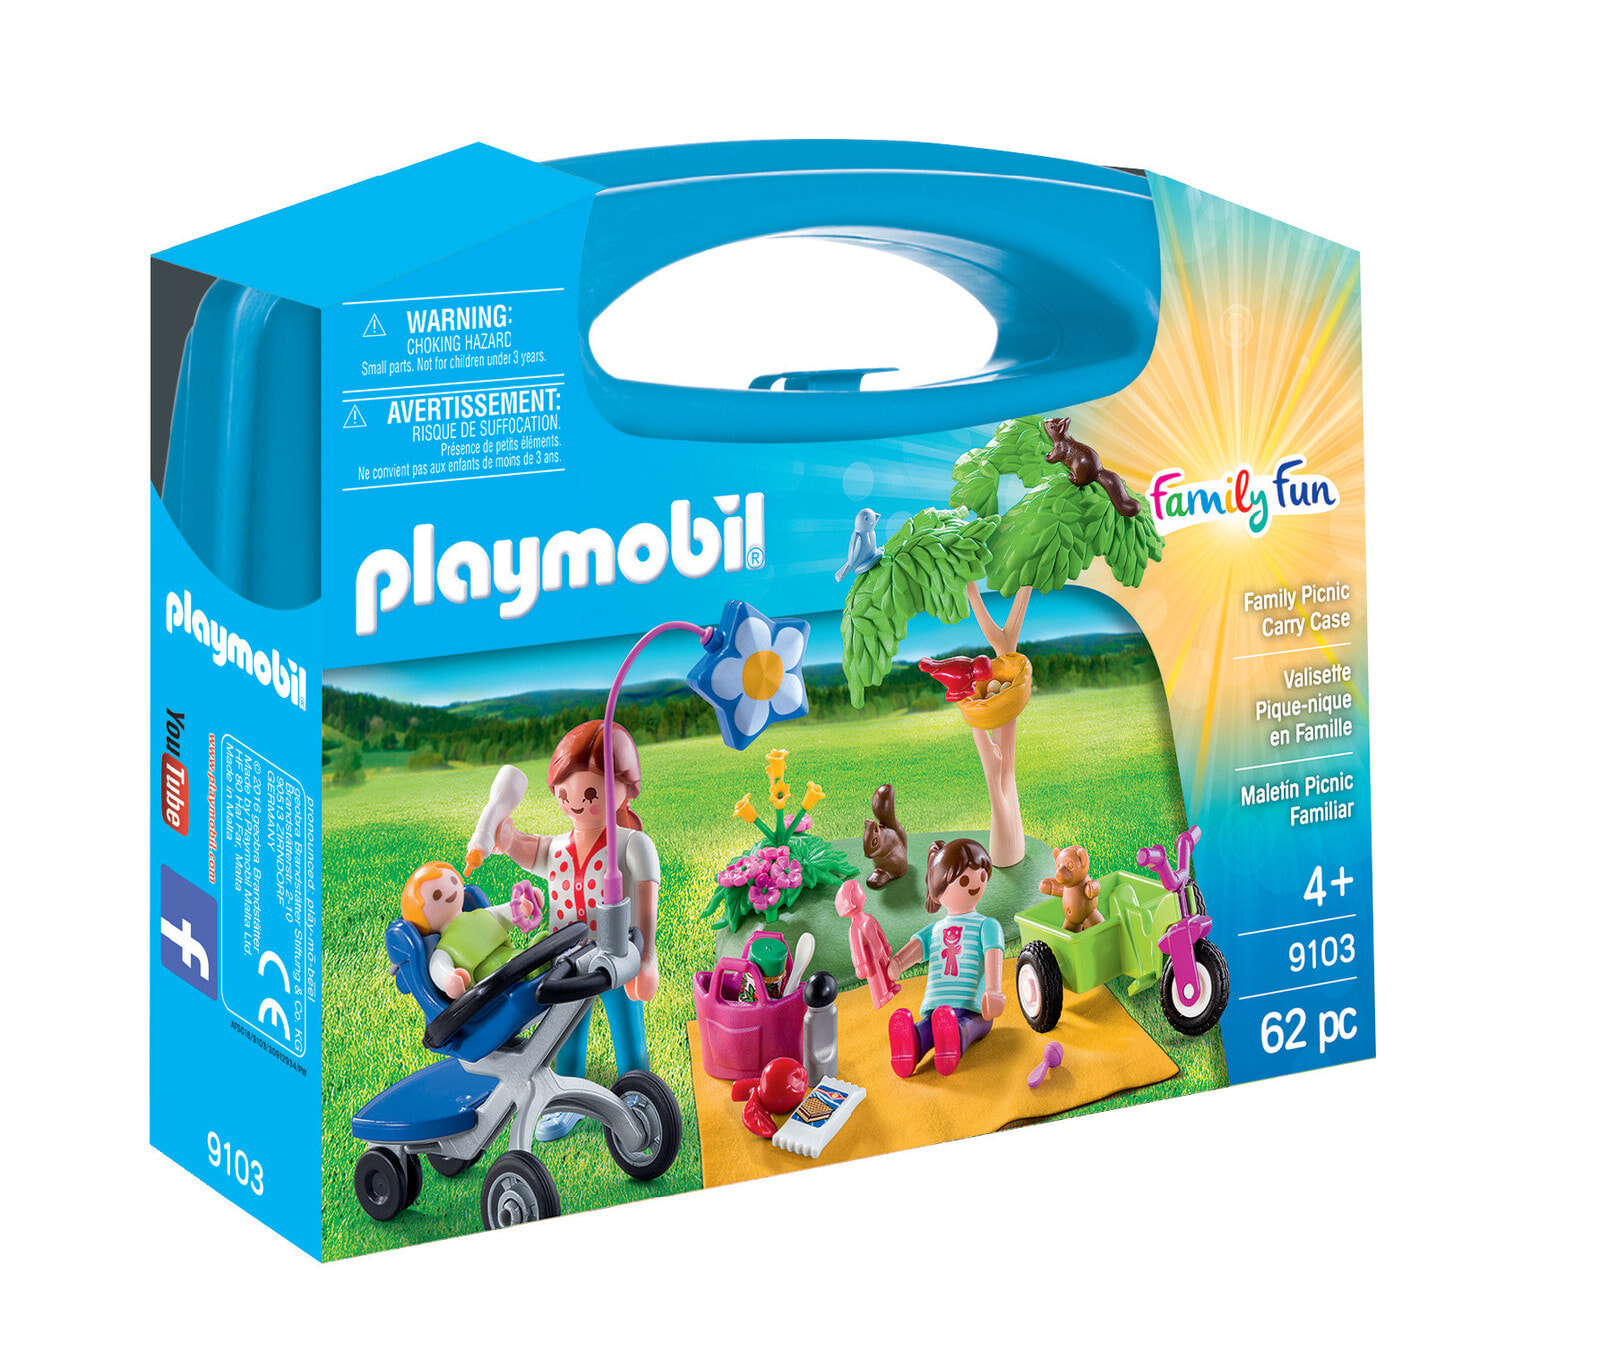 Детский игровой набор и фигурка из дерева geobra Brandstätter GmbH & Co. KG Playmobil FamilyFun 9103, Family Picnic, Boy/Girl, 4 yr(s), Multicolour, Plastic